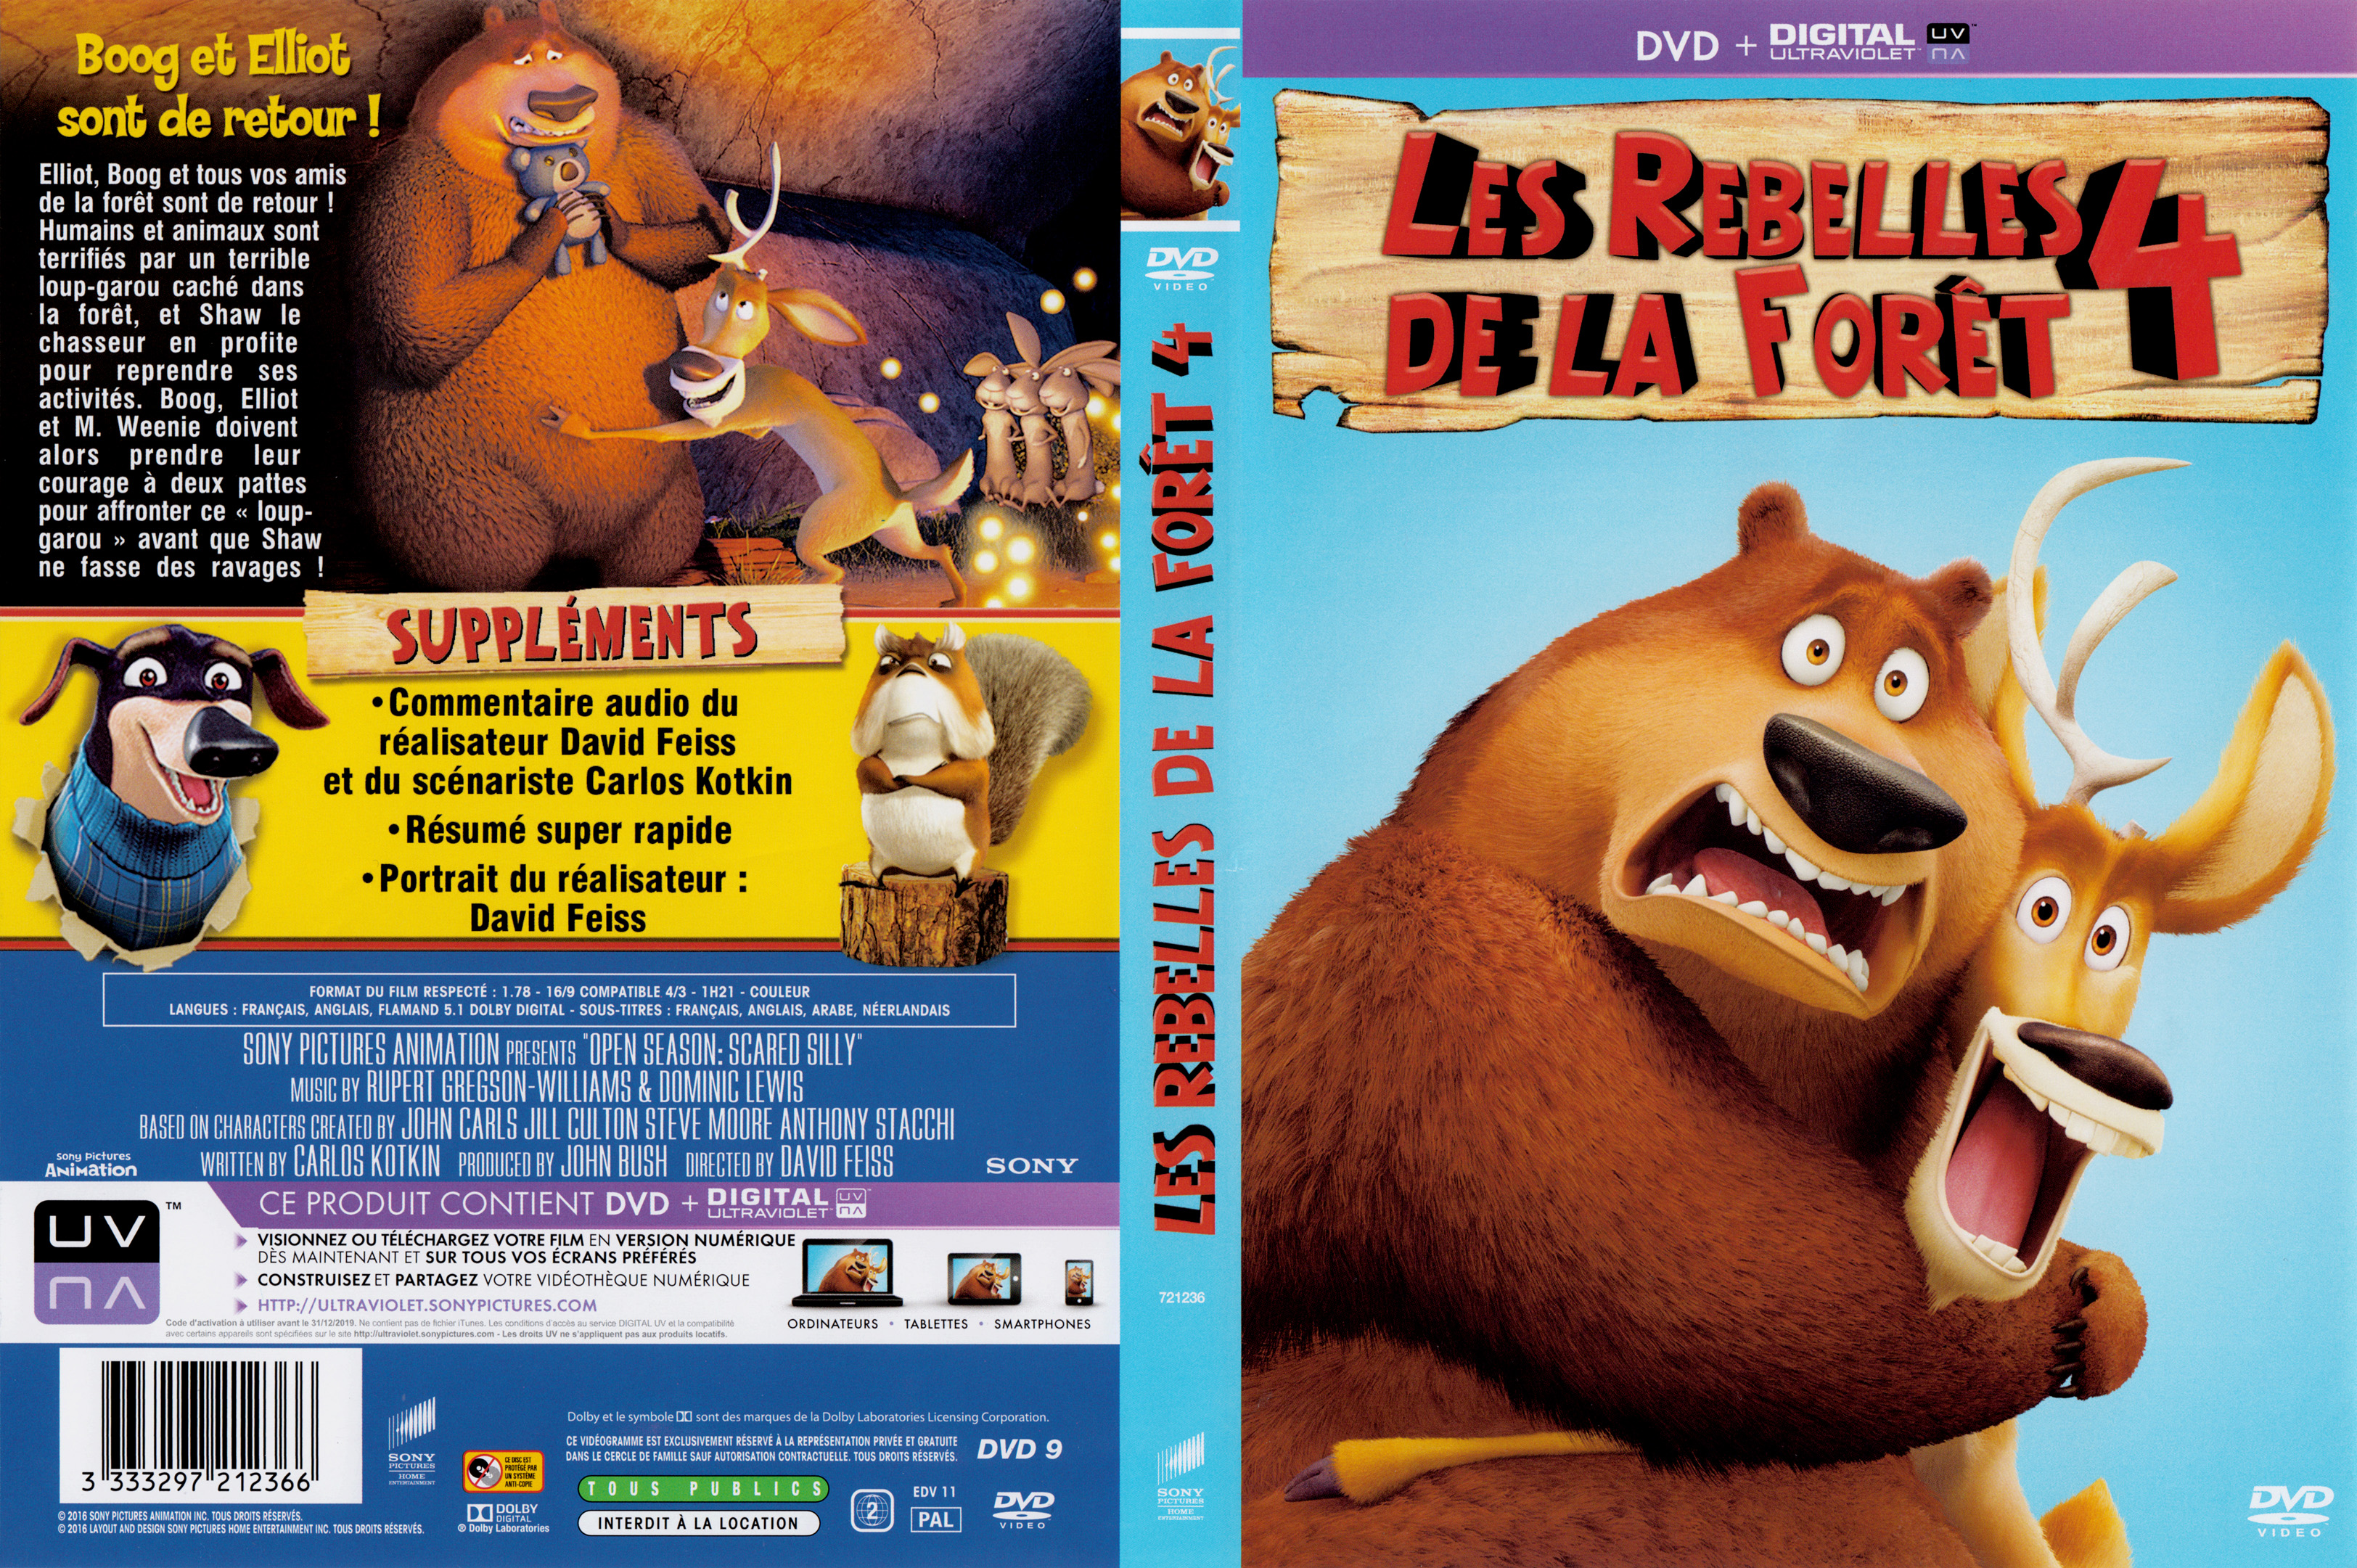 Jaquette DVD Les rebelles de la foret 4